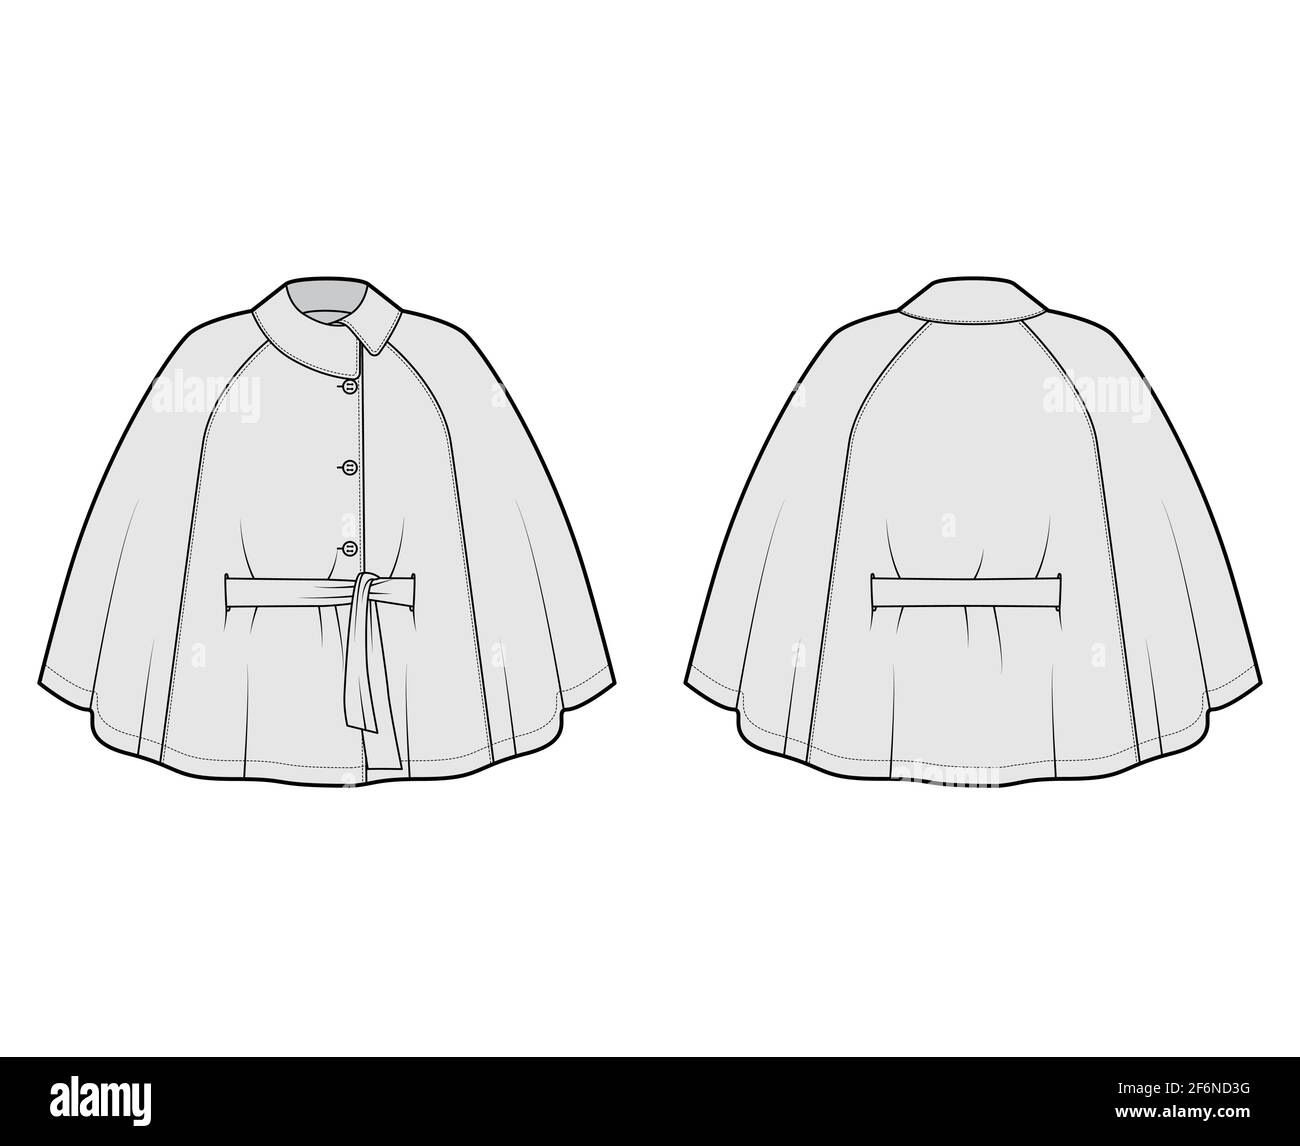 Cape manteau manteau manteau illustration technique de la mode avec  ceinture, col asymétrique, corps trapèze grand, longueur du bout des  doigts. Modèle de veste plate à l'avant, à l'arrière, blanc, style gris.